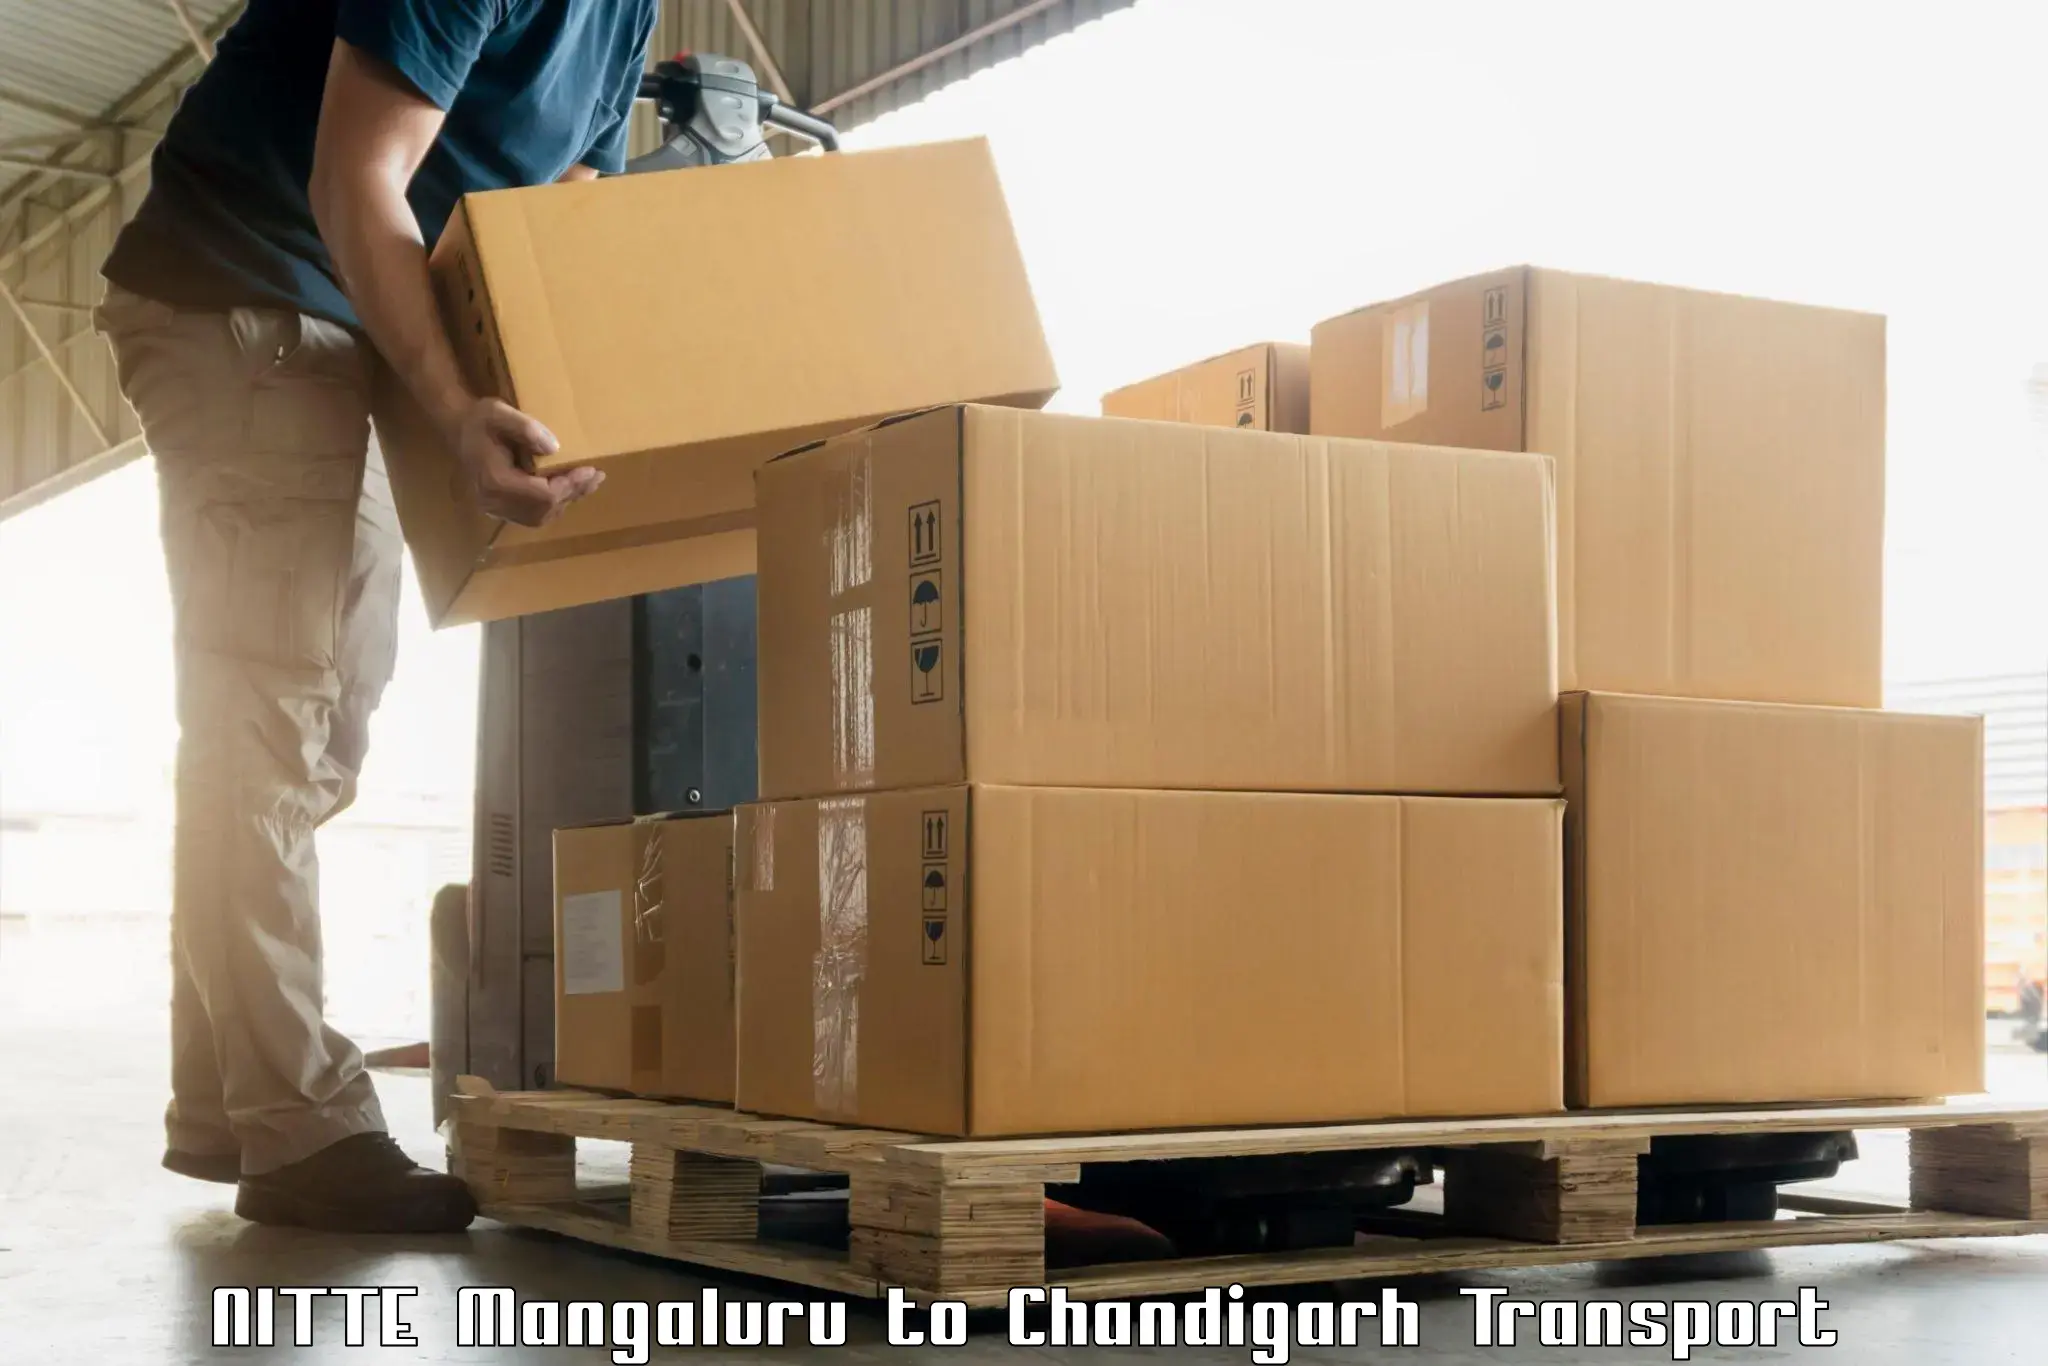 Truck transport companies in India NITTE Mangaluru to Chandigarh